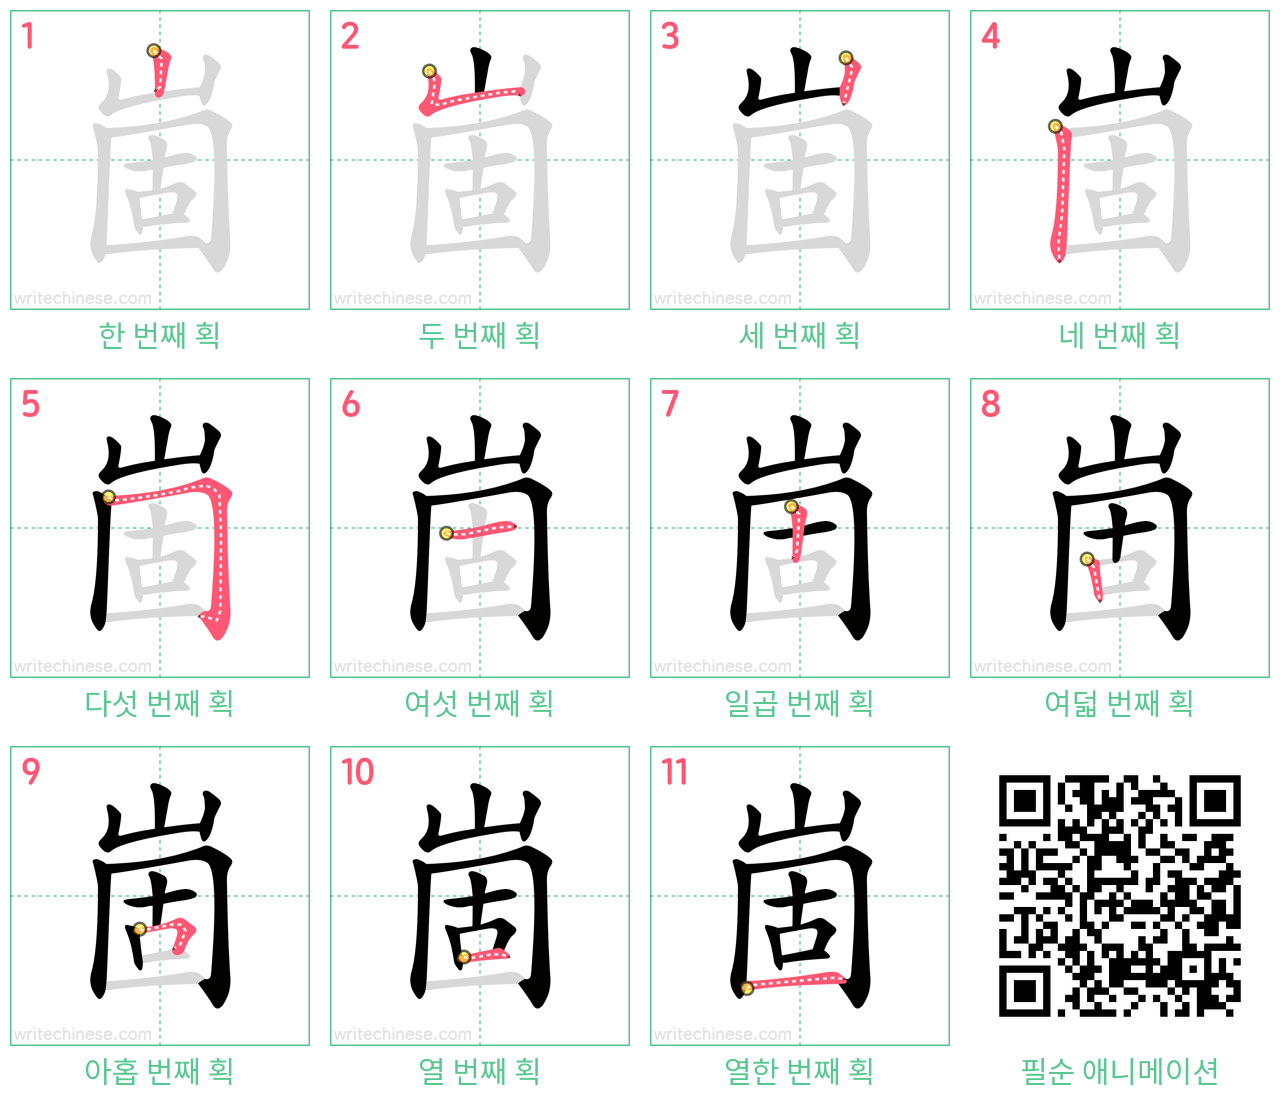 崮 step-by-step stroke order diagrams